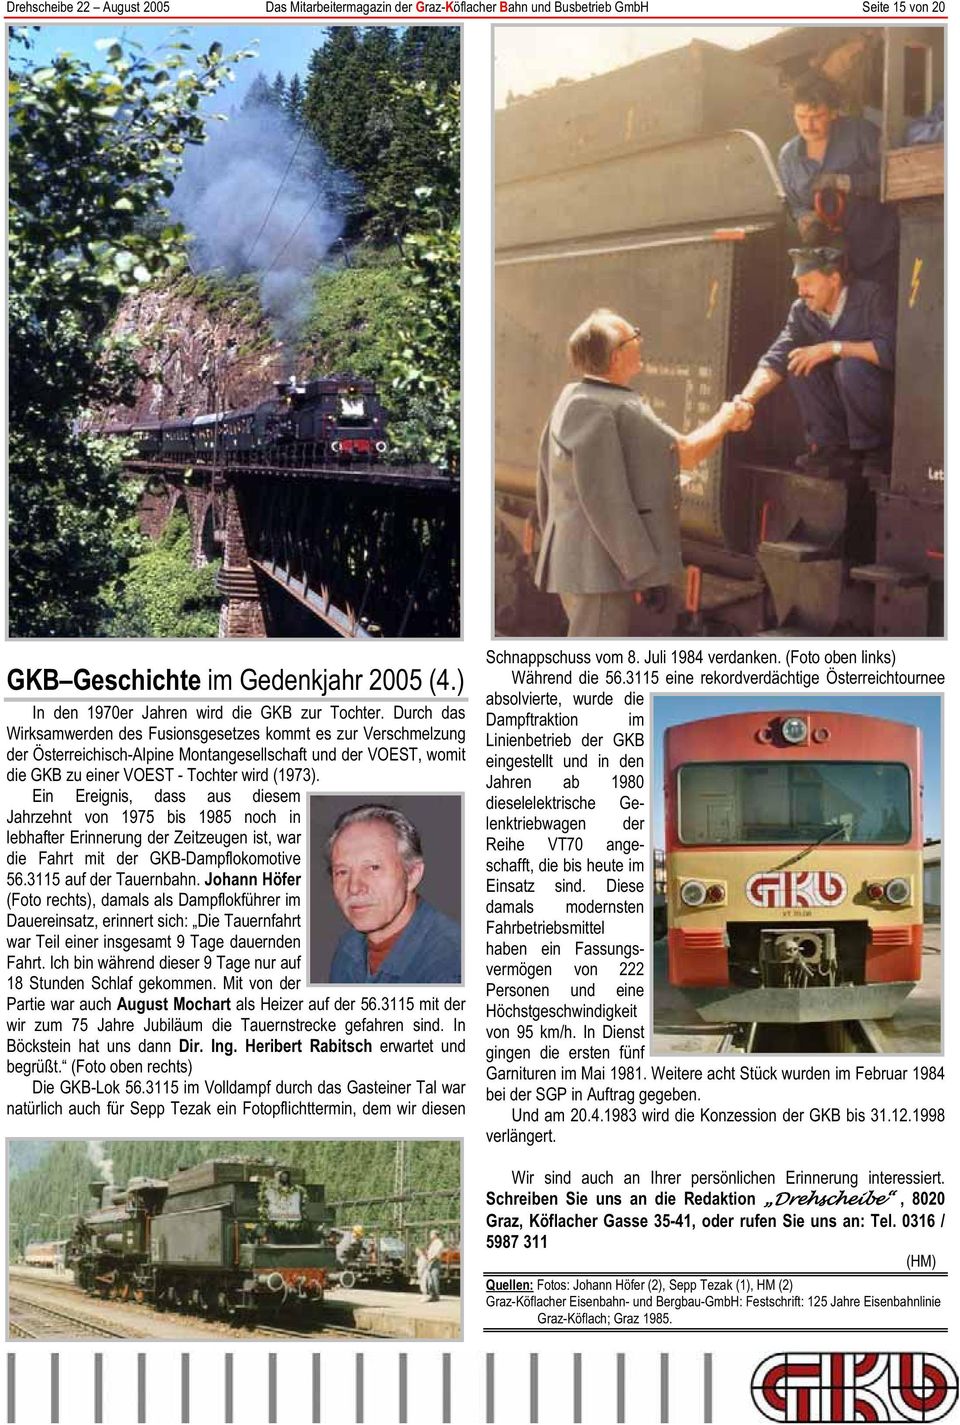 Ein Ereignis, dass aus diesem Jahrzehnt von 1975 bis 1985 noch in lebhafter Erinnerung der Zeitzeugen ist, war die Fahrt mit der GKB-Dampflokomotive 56.3115 auf der Tauernbahn.